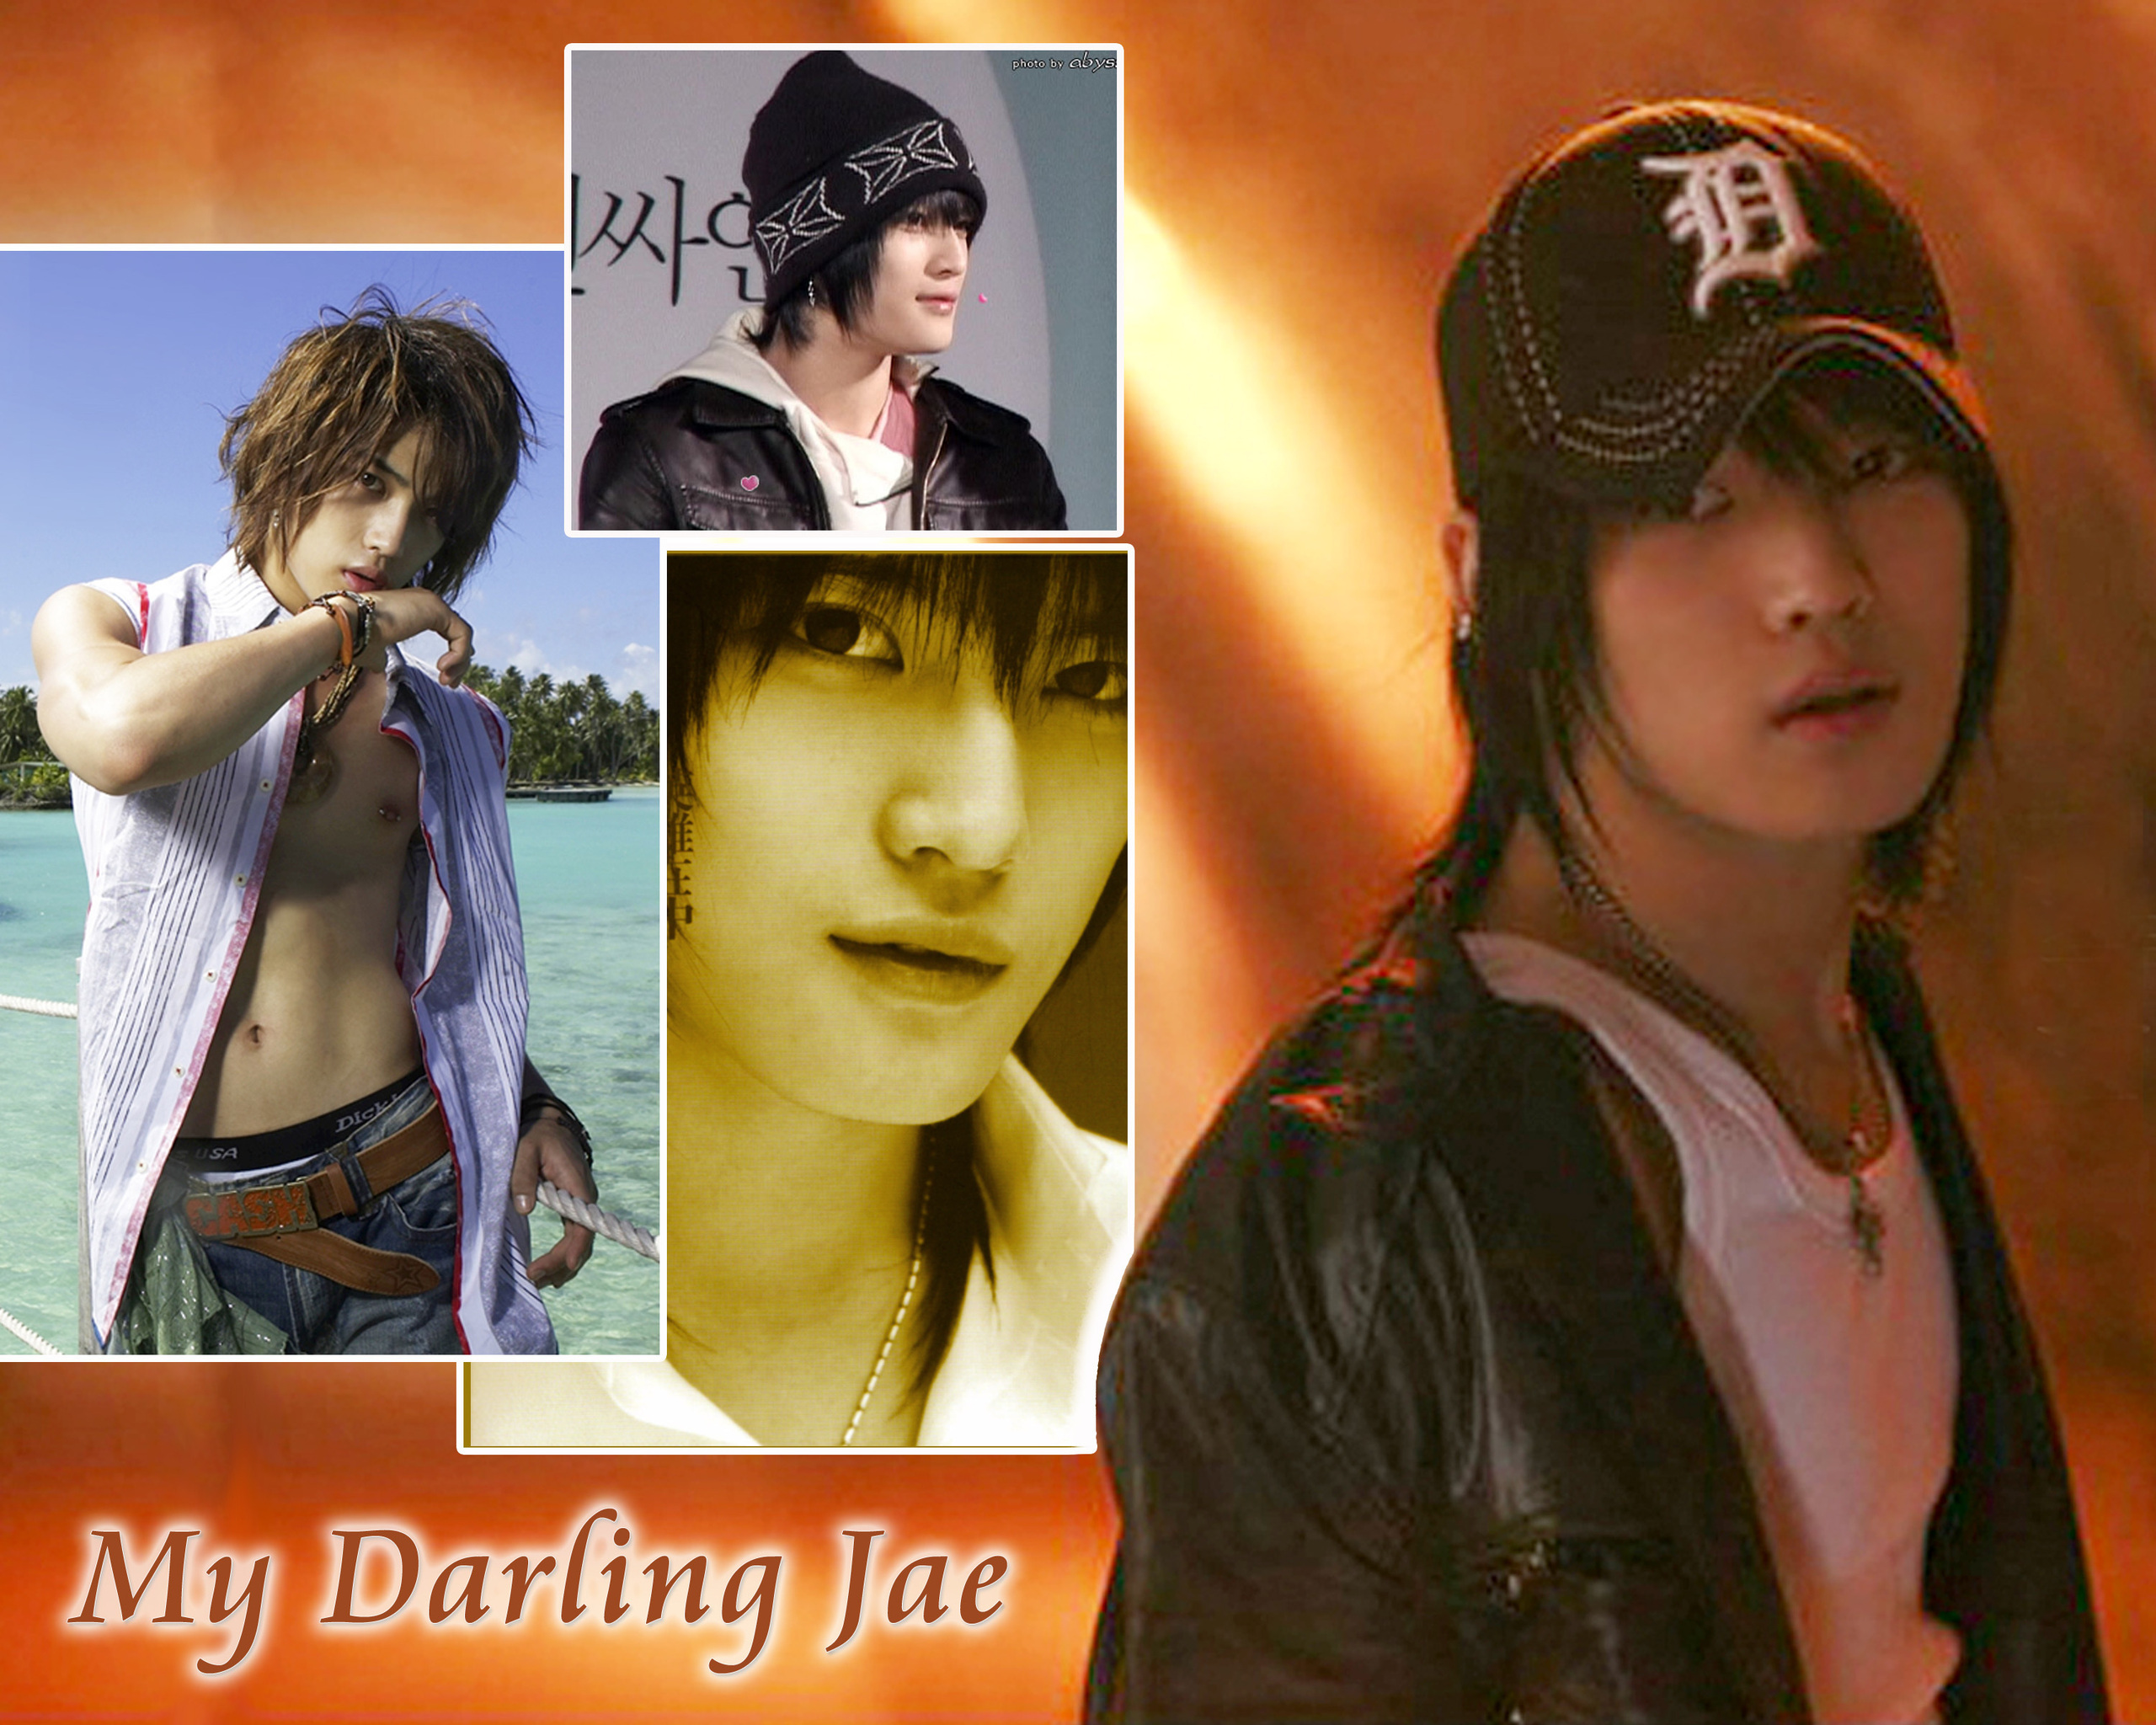 Jae darling